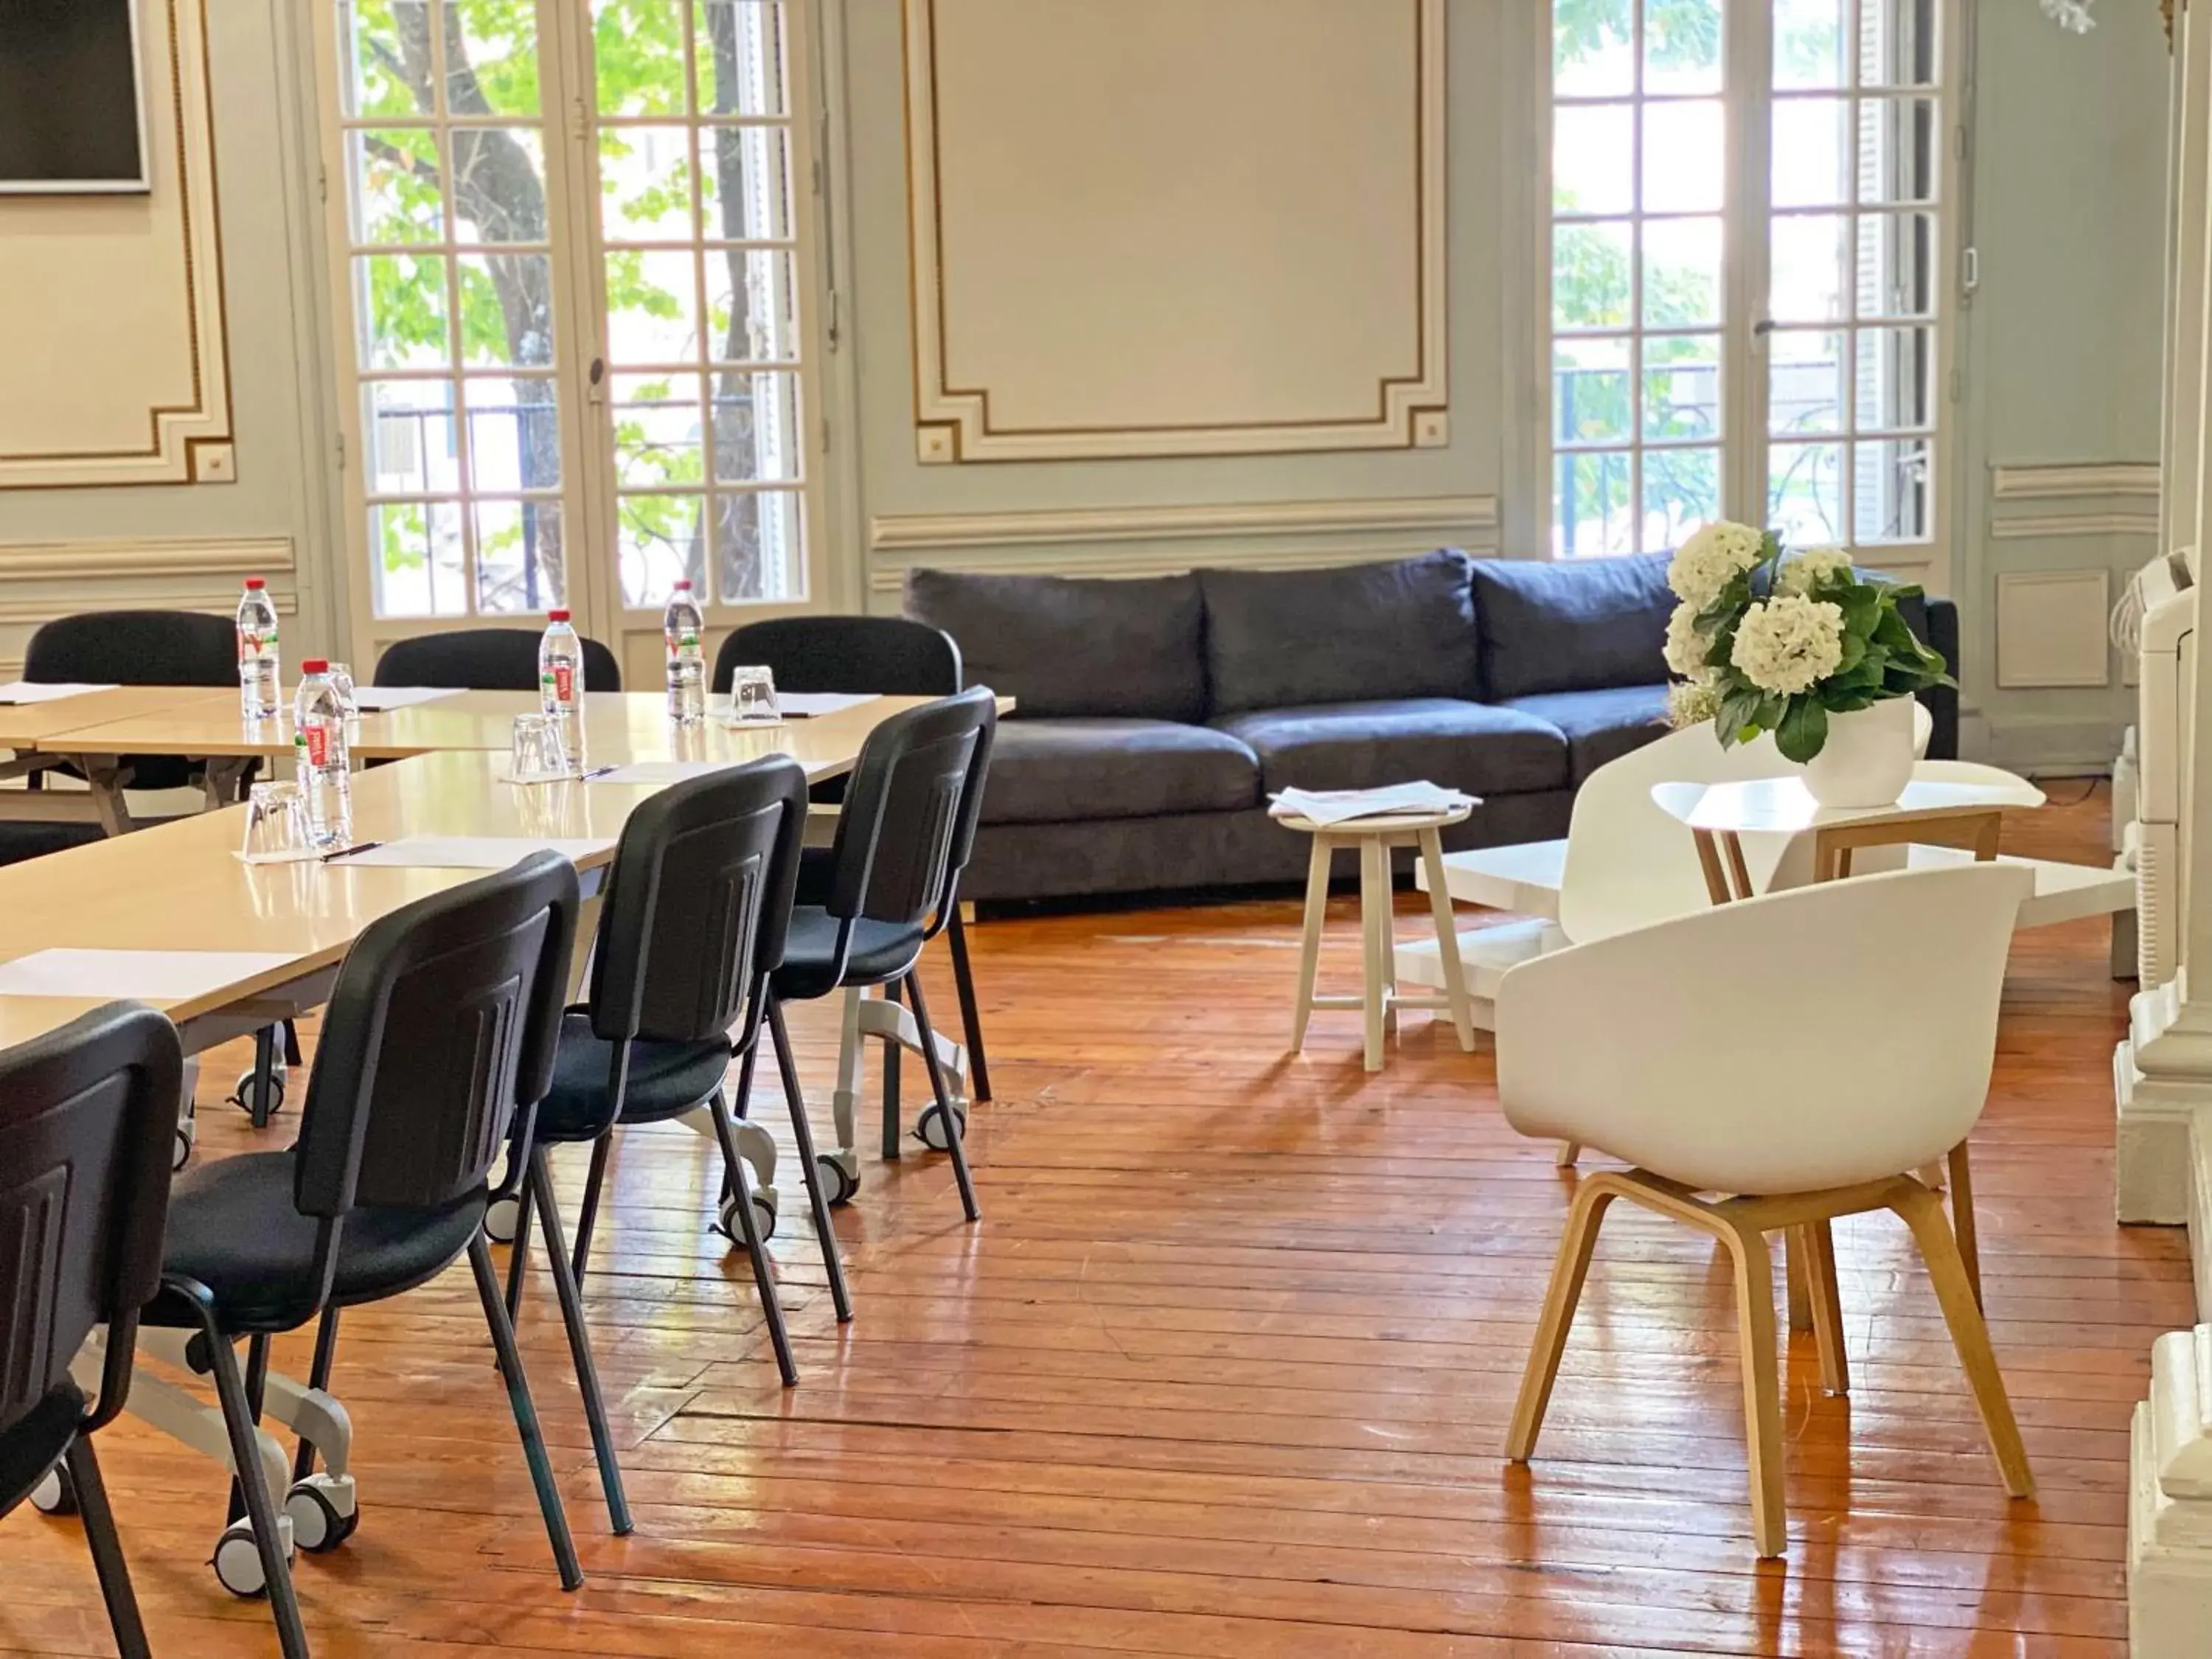 Meeting/conference room in Hôtel de France